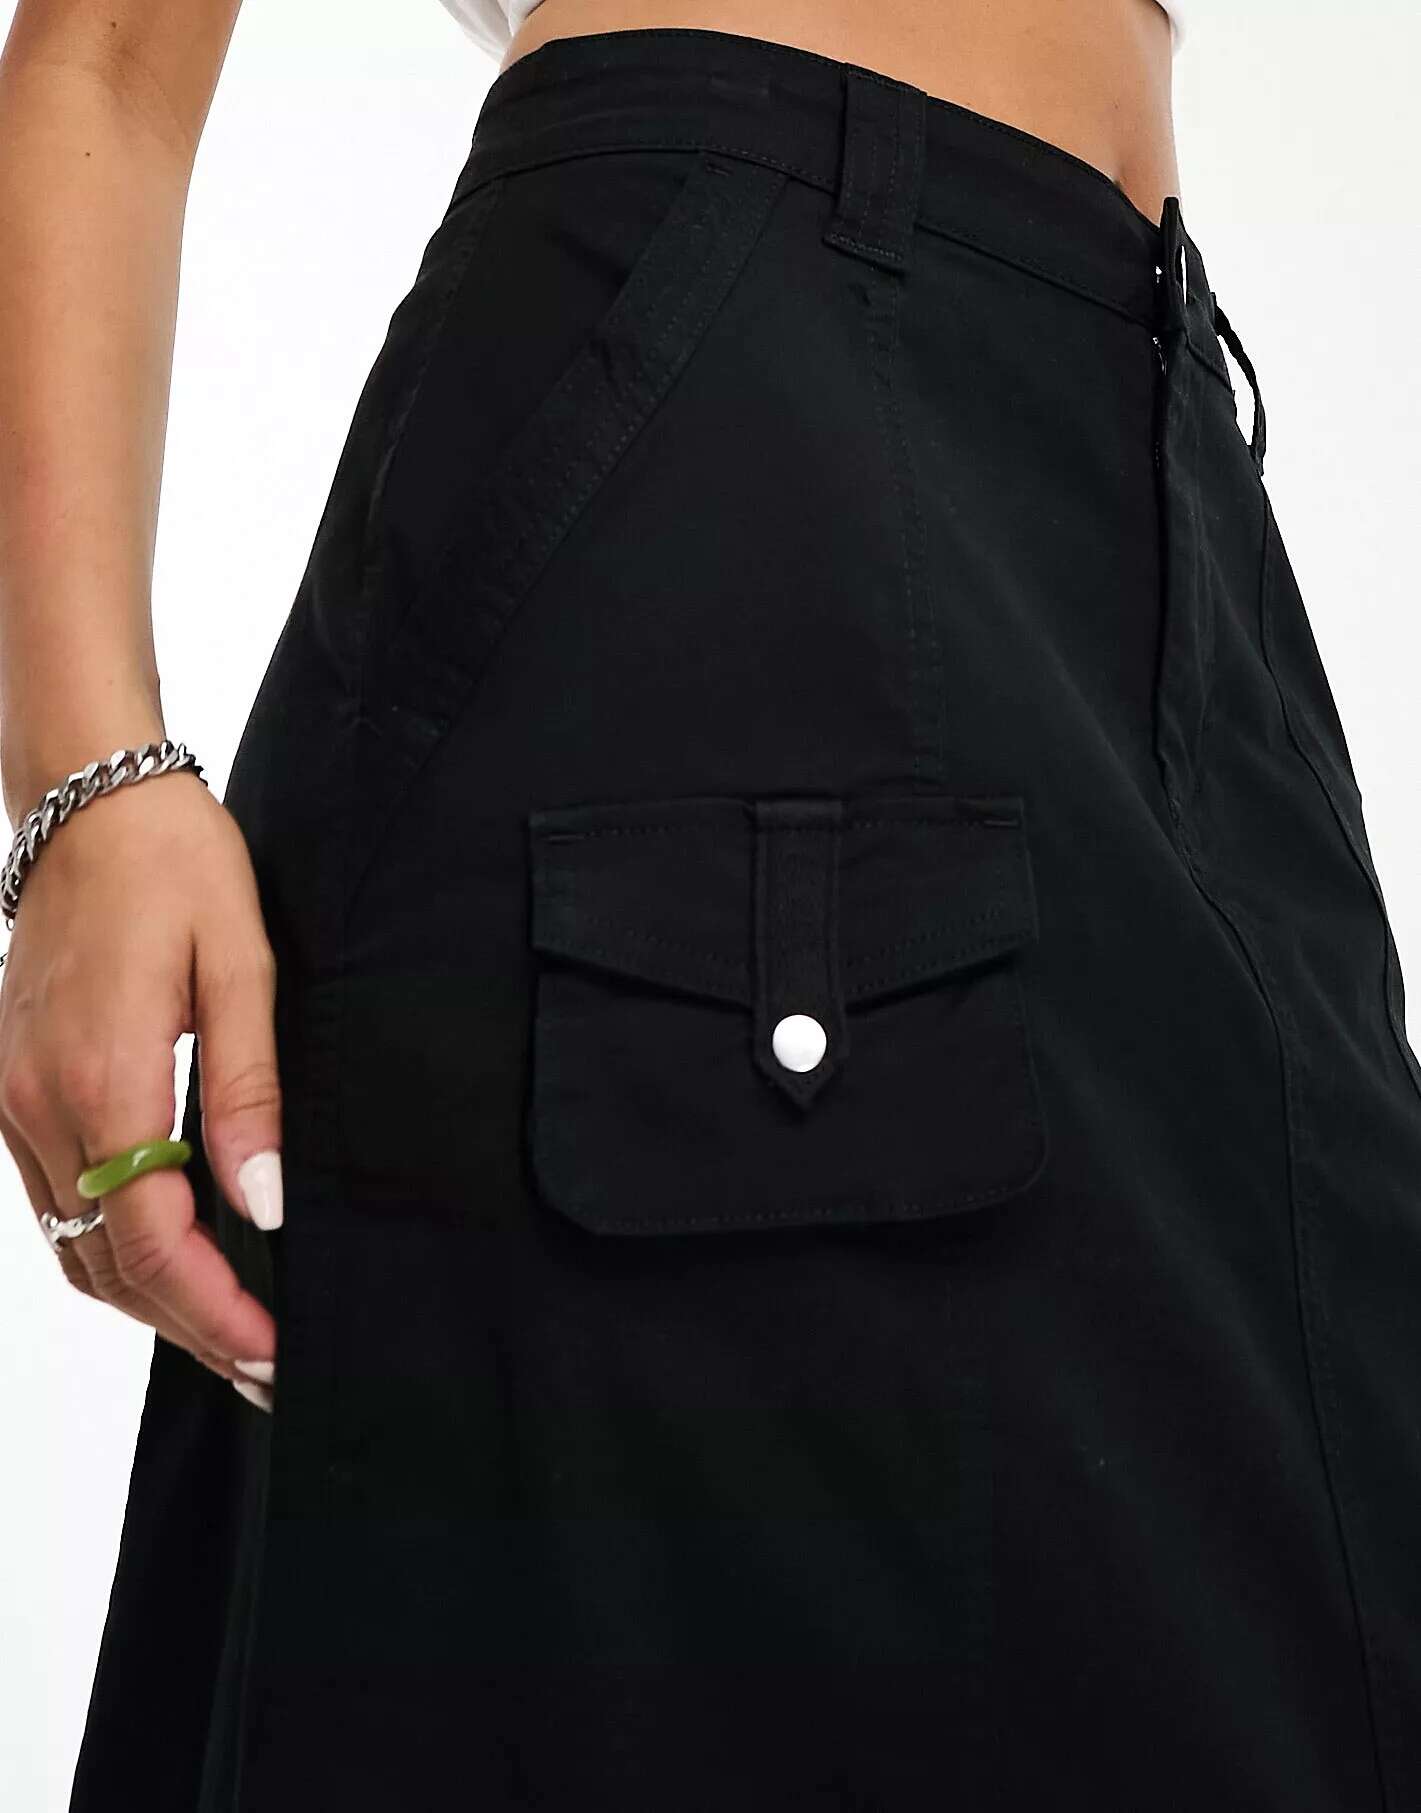 Хлопок: Юбка макси On практичная черная Cotton:On юбка glenfield практичная 42 размер